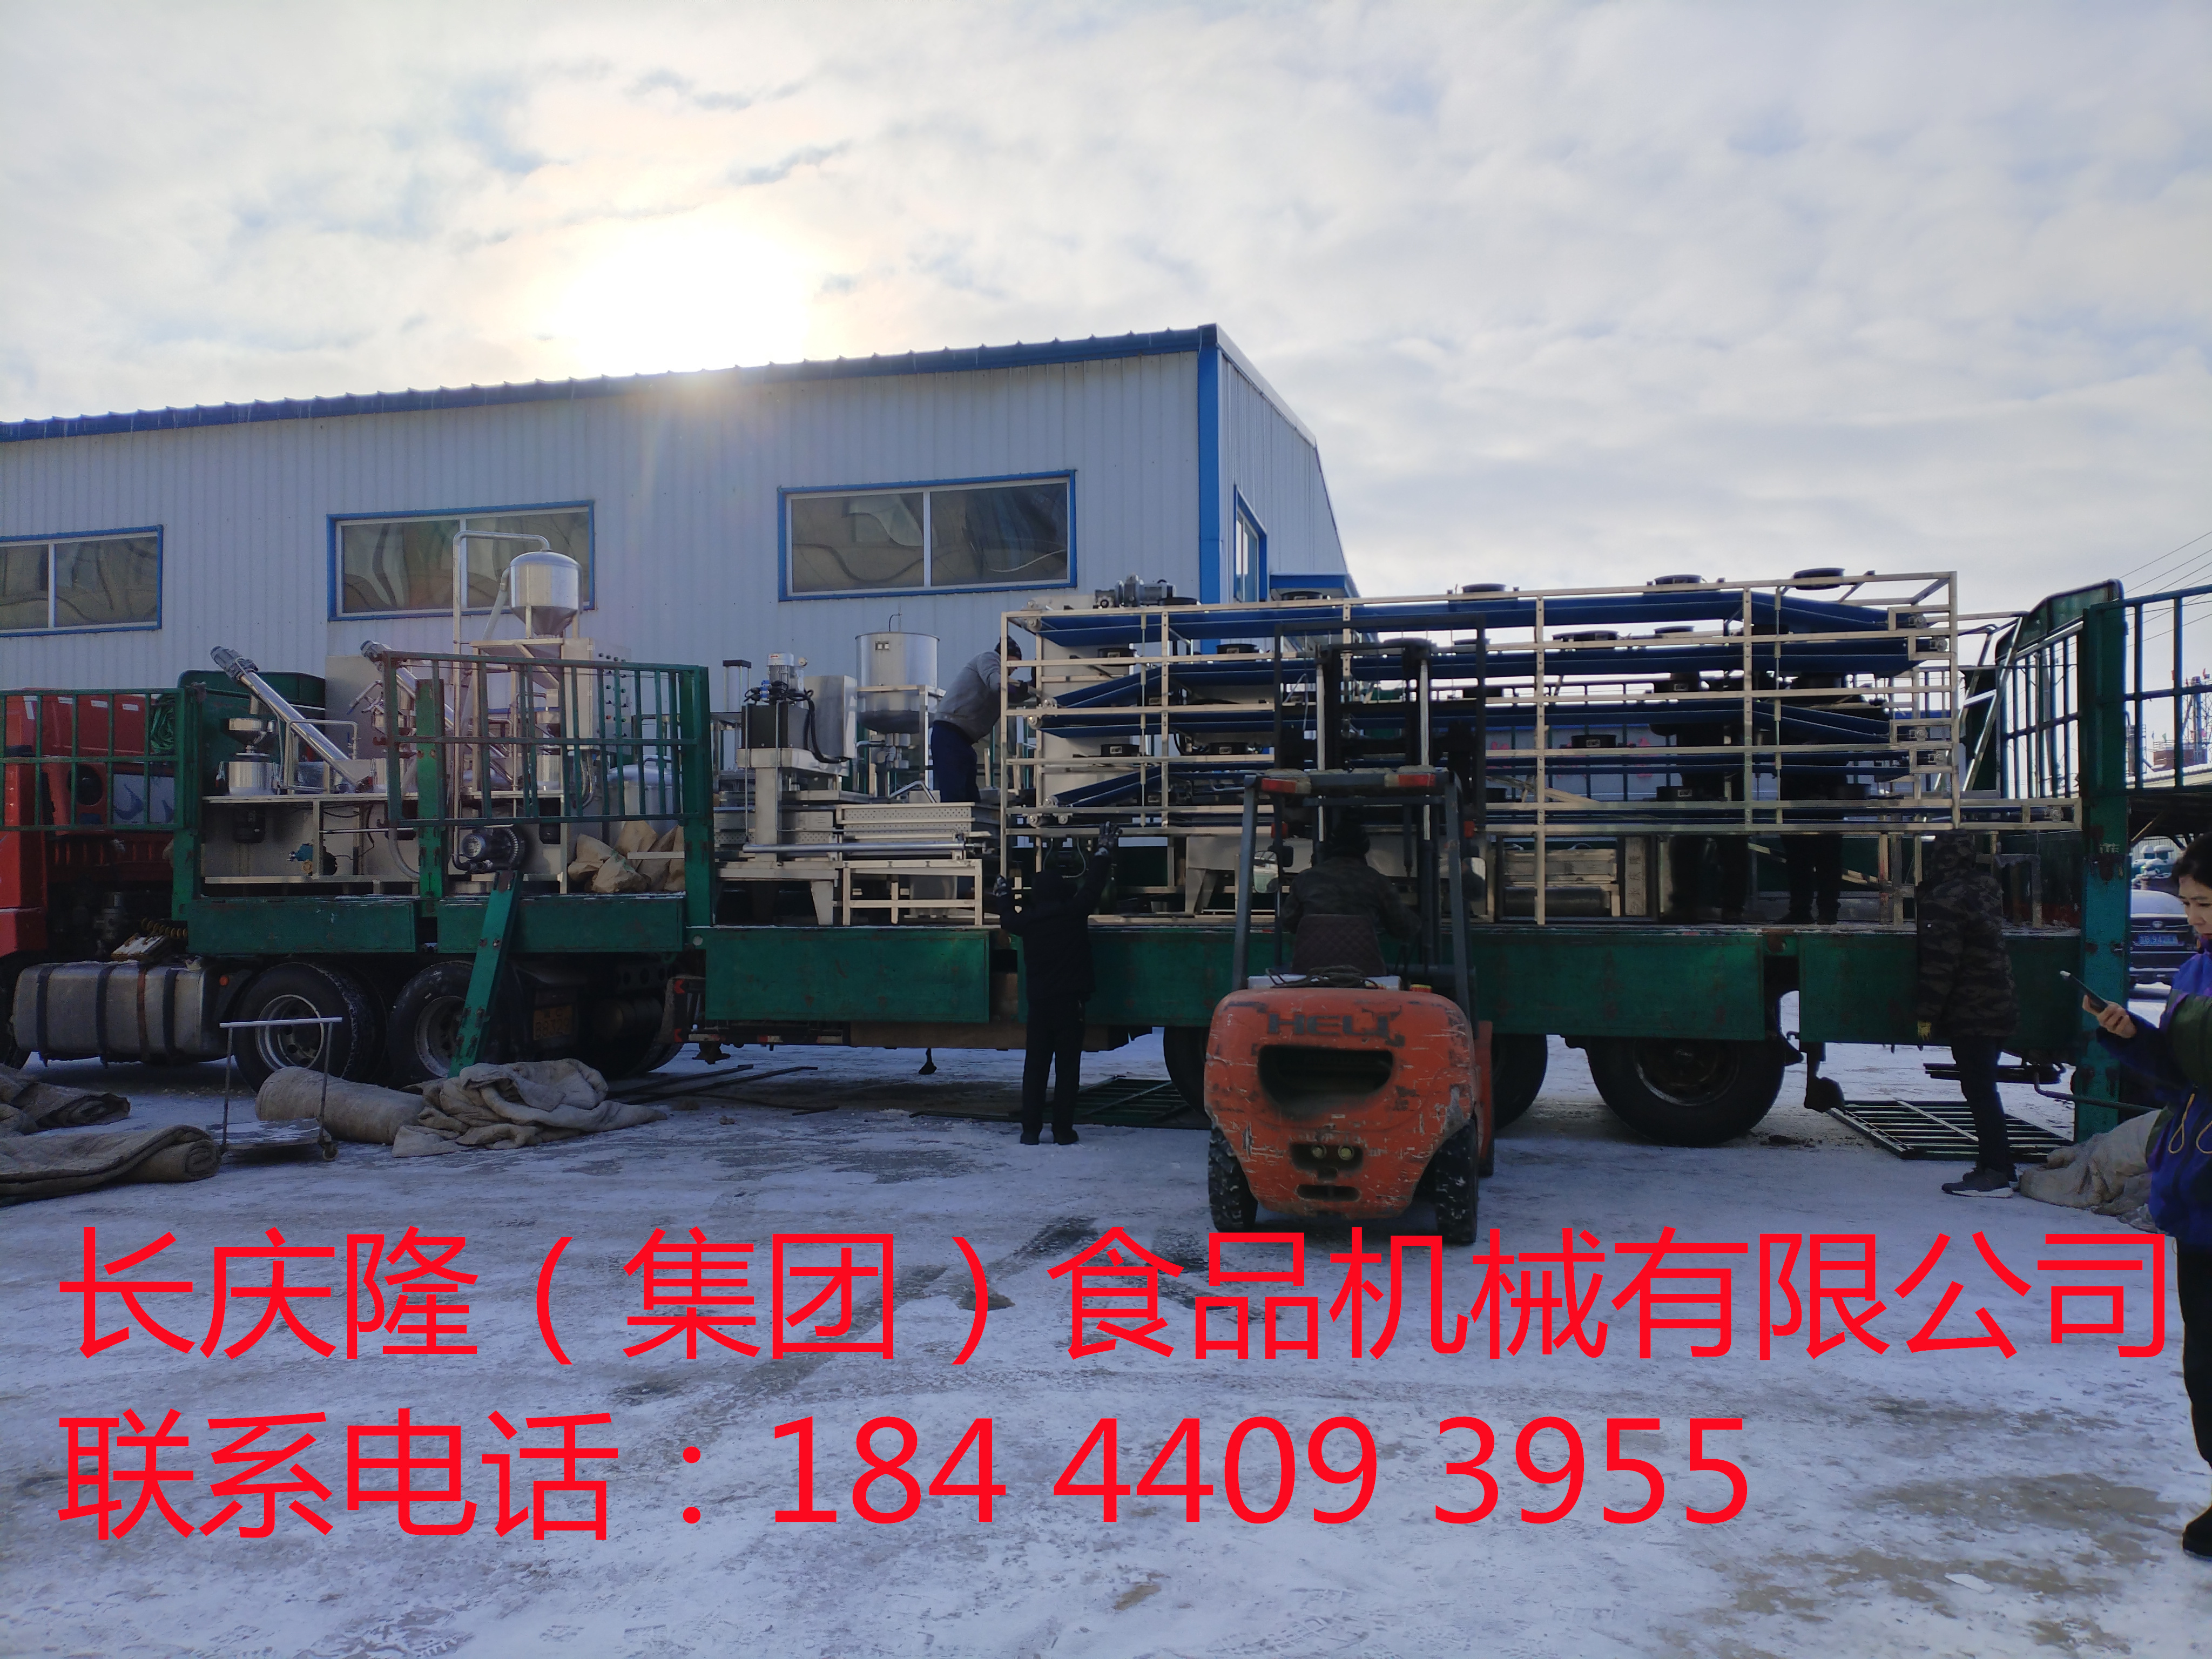 河北滦县客户订购的大型干豆腐机生产线马上装车 (7)_副本.jpg